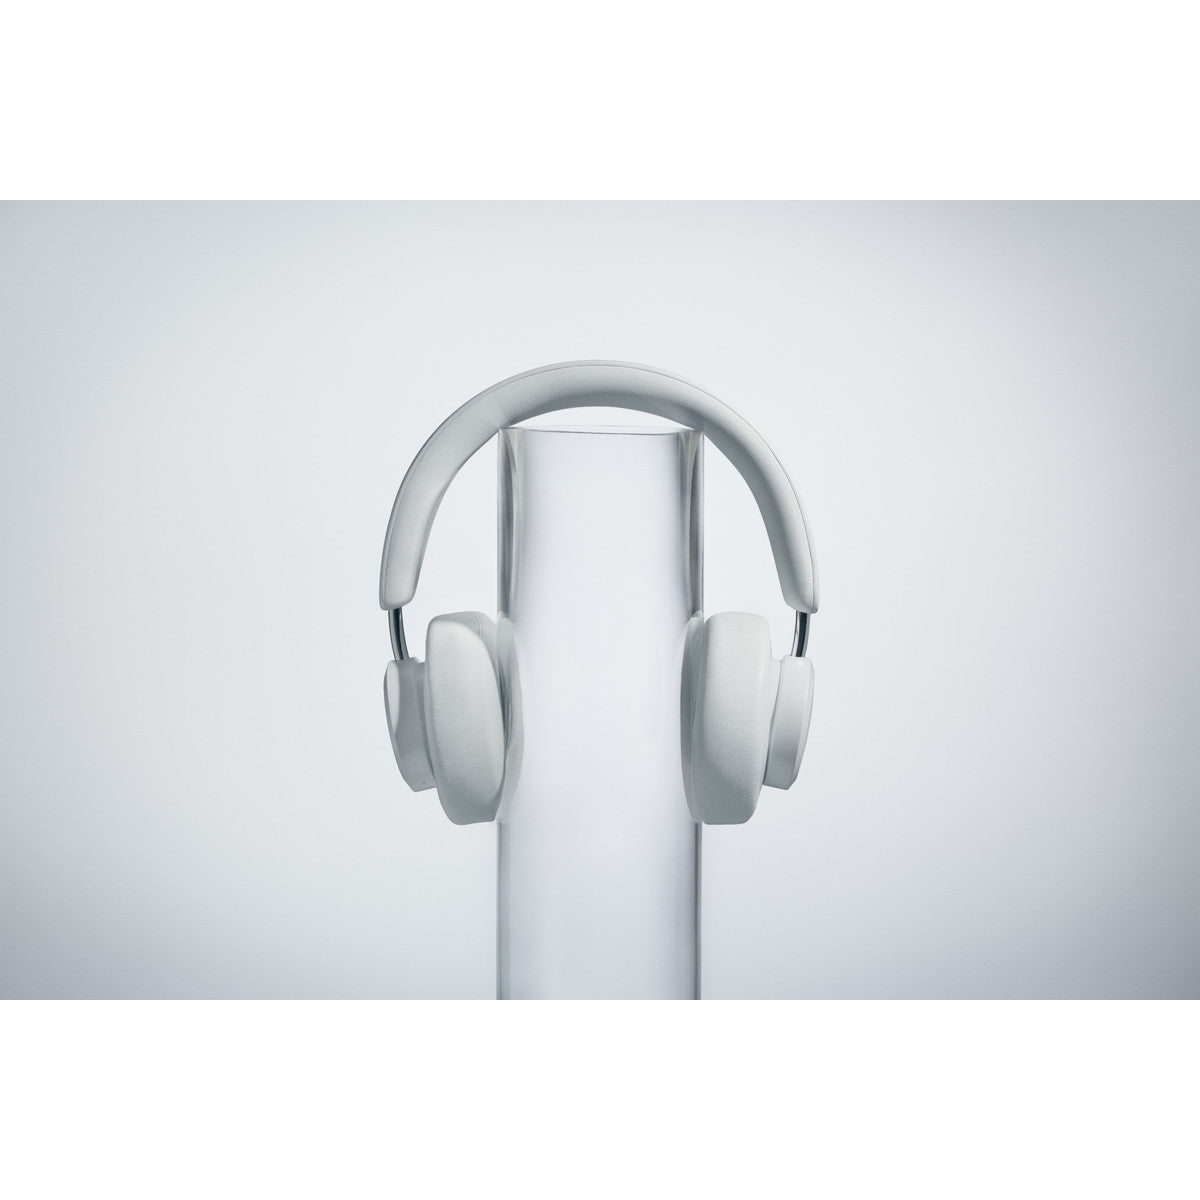 ワイヤレスヘッドホン MIAMI〔マイアミ〕 Noise Cancelling Bluetooth ホワイト